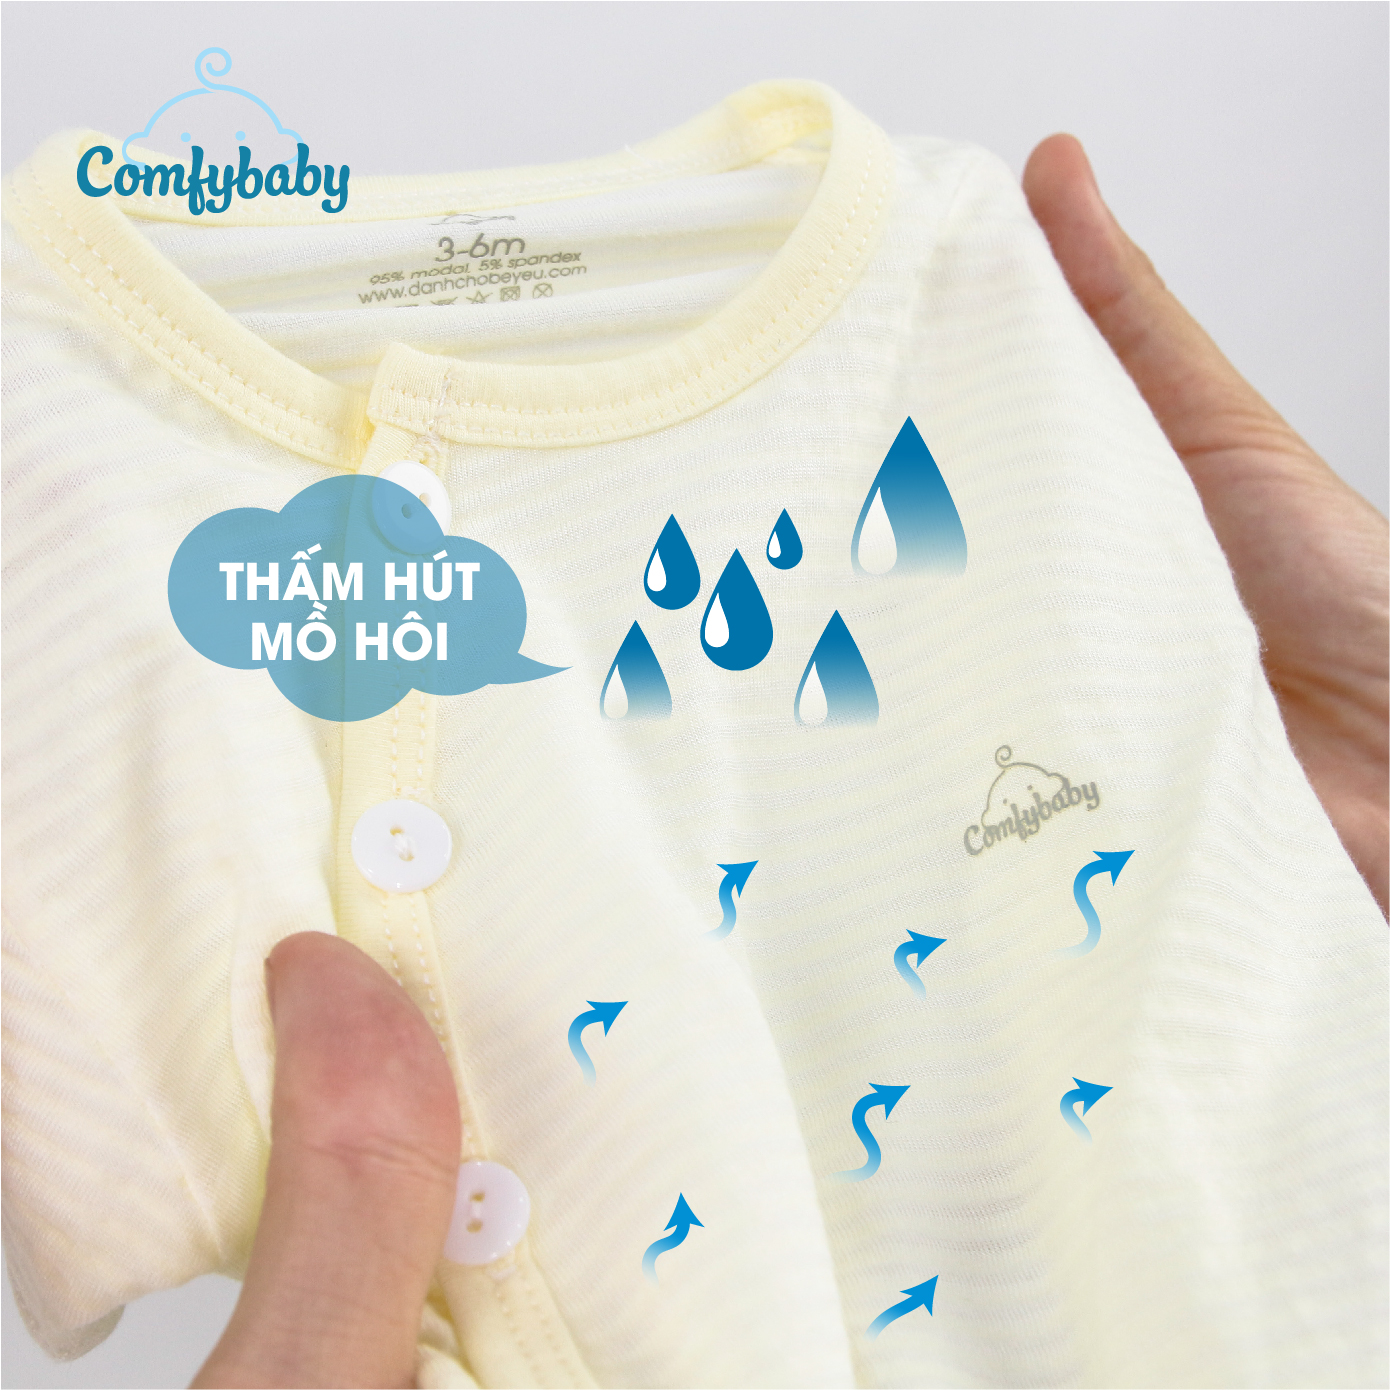 Bộ quần áo cộc cho bé 100% Cotton Lụa – Comfybaby Siêu nhẹ - thoáng mát QACF22042021 size 3-12 tháng